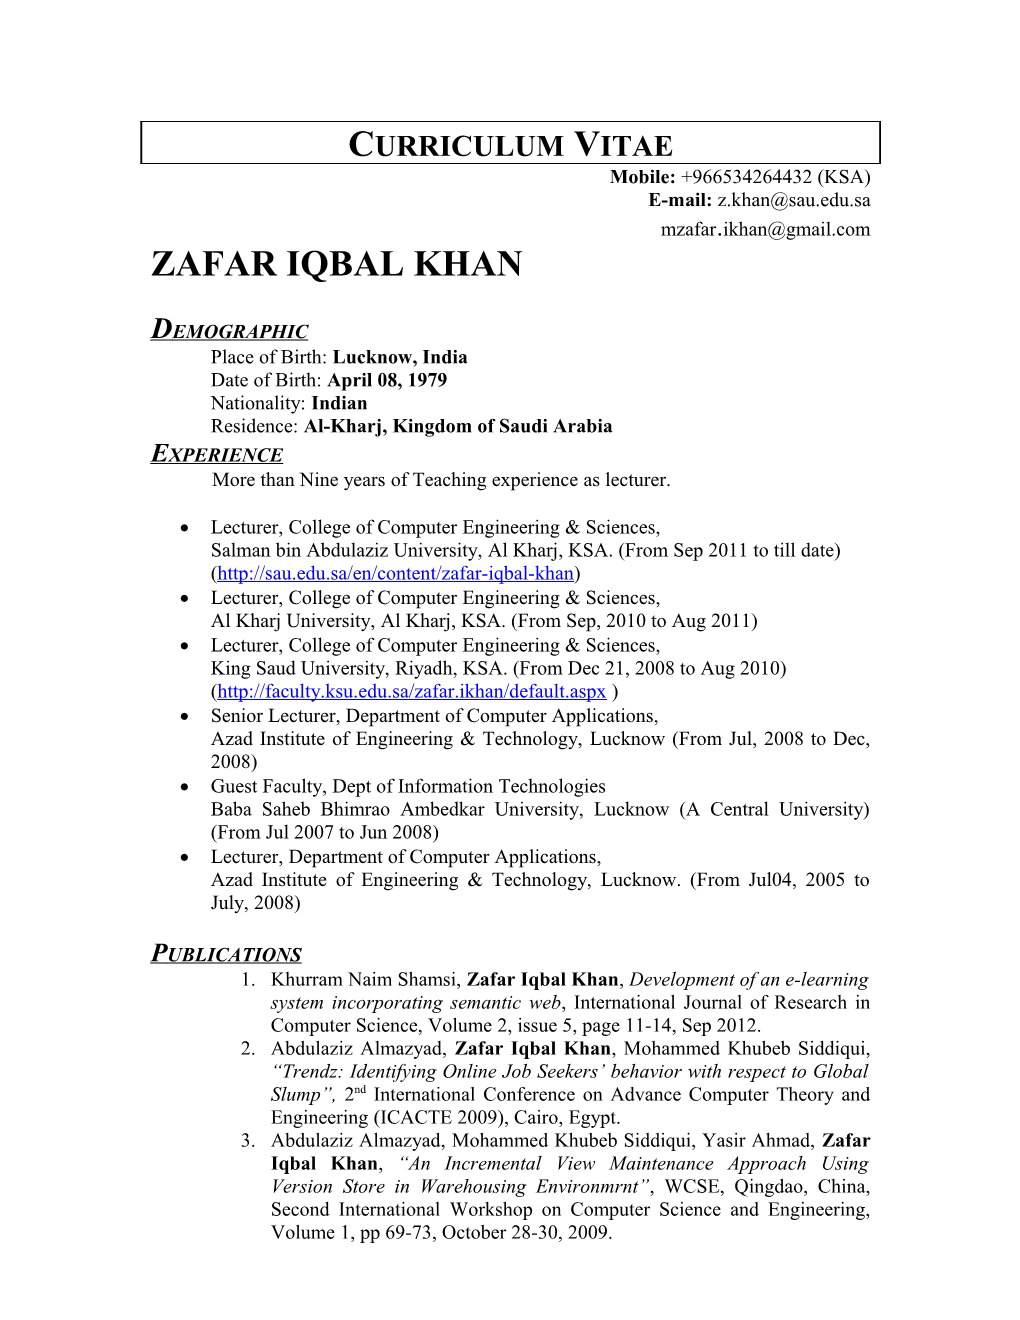 Zafar Iqbal Khan